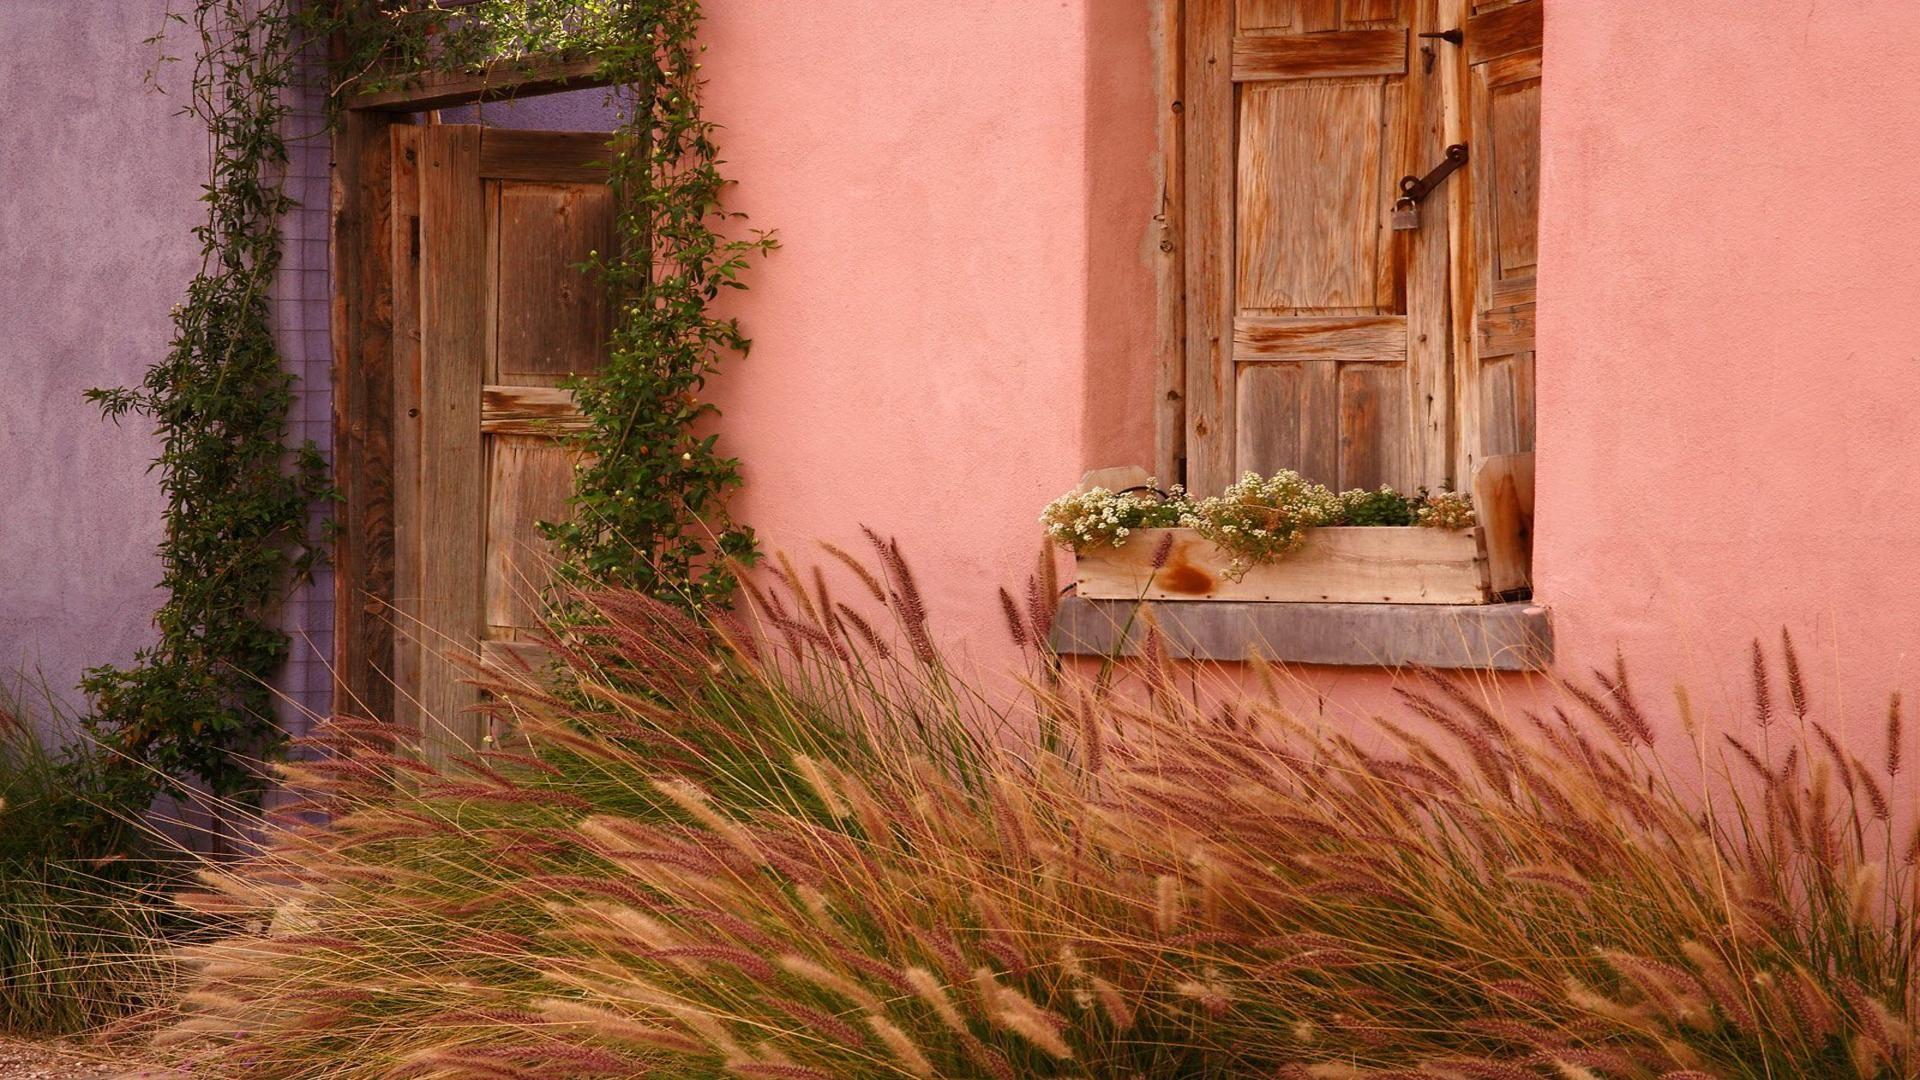 immagine di sfondo per la casa,parete,erba,proprietà,famiglia di erba,casa